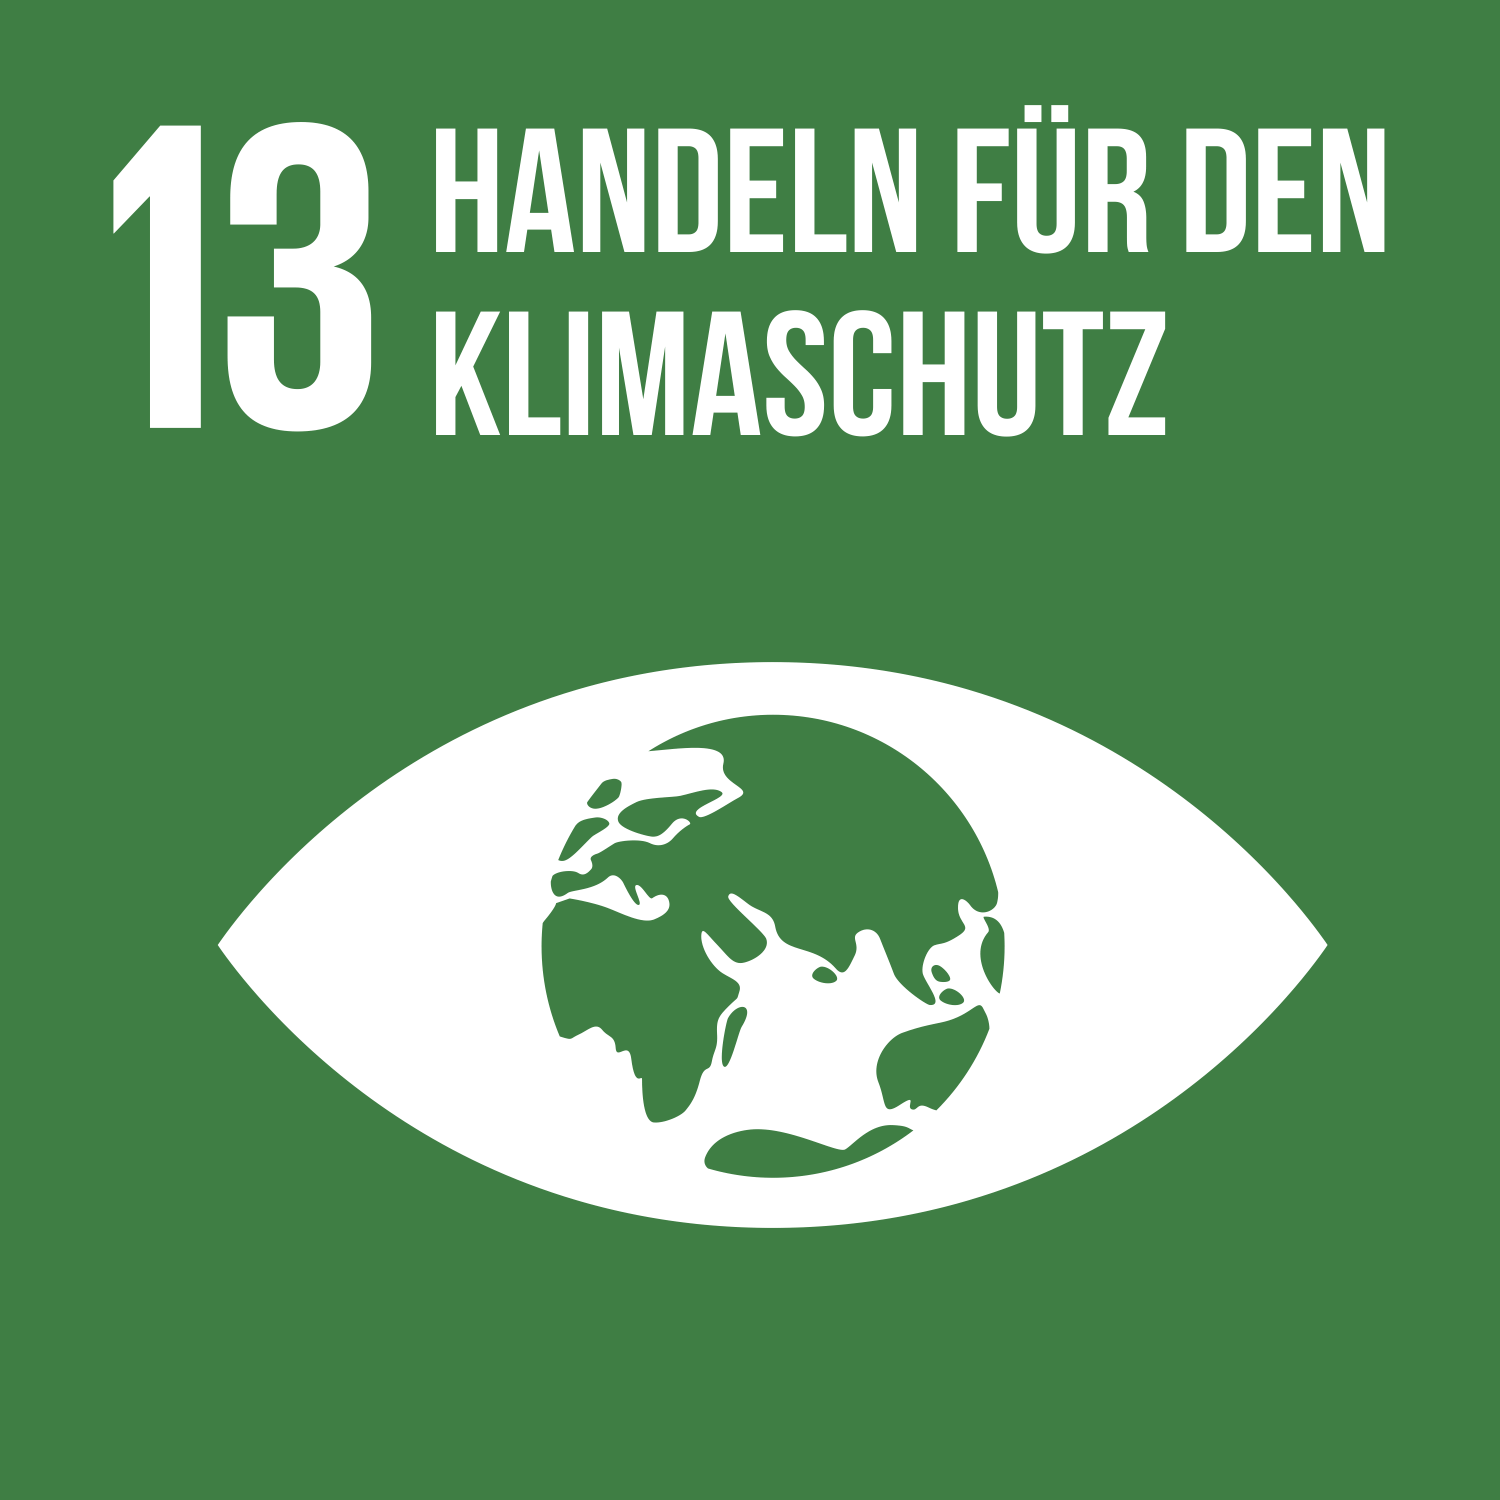 SDG13: Handeln für den Klimaschutz